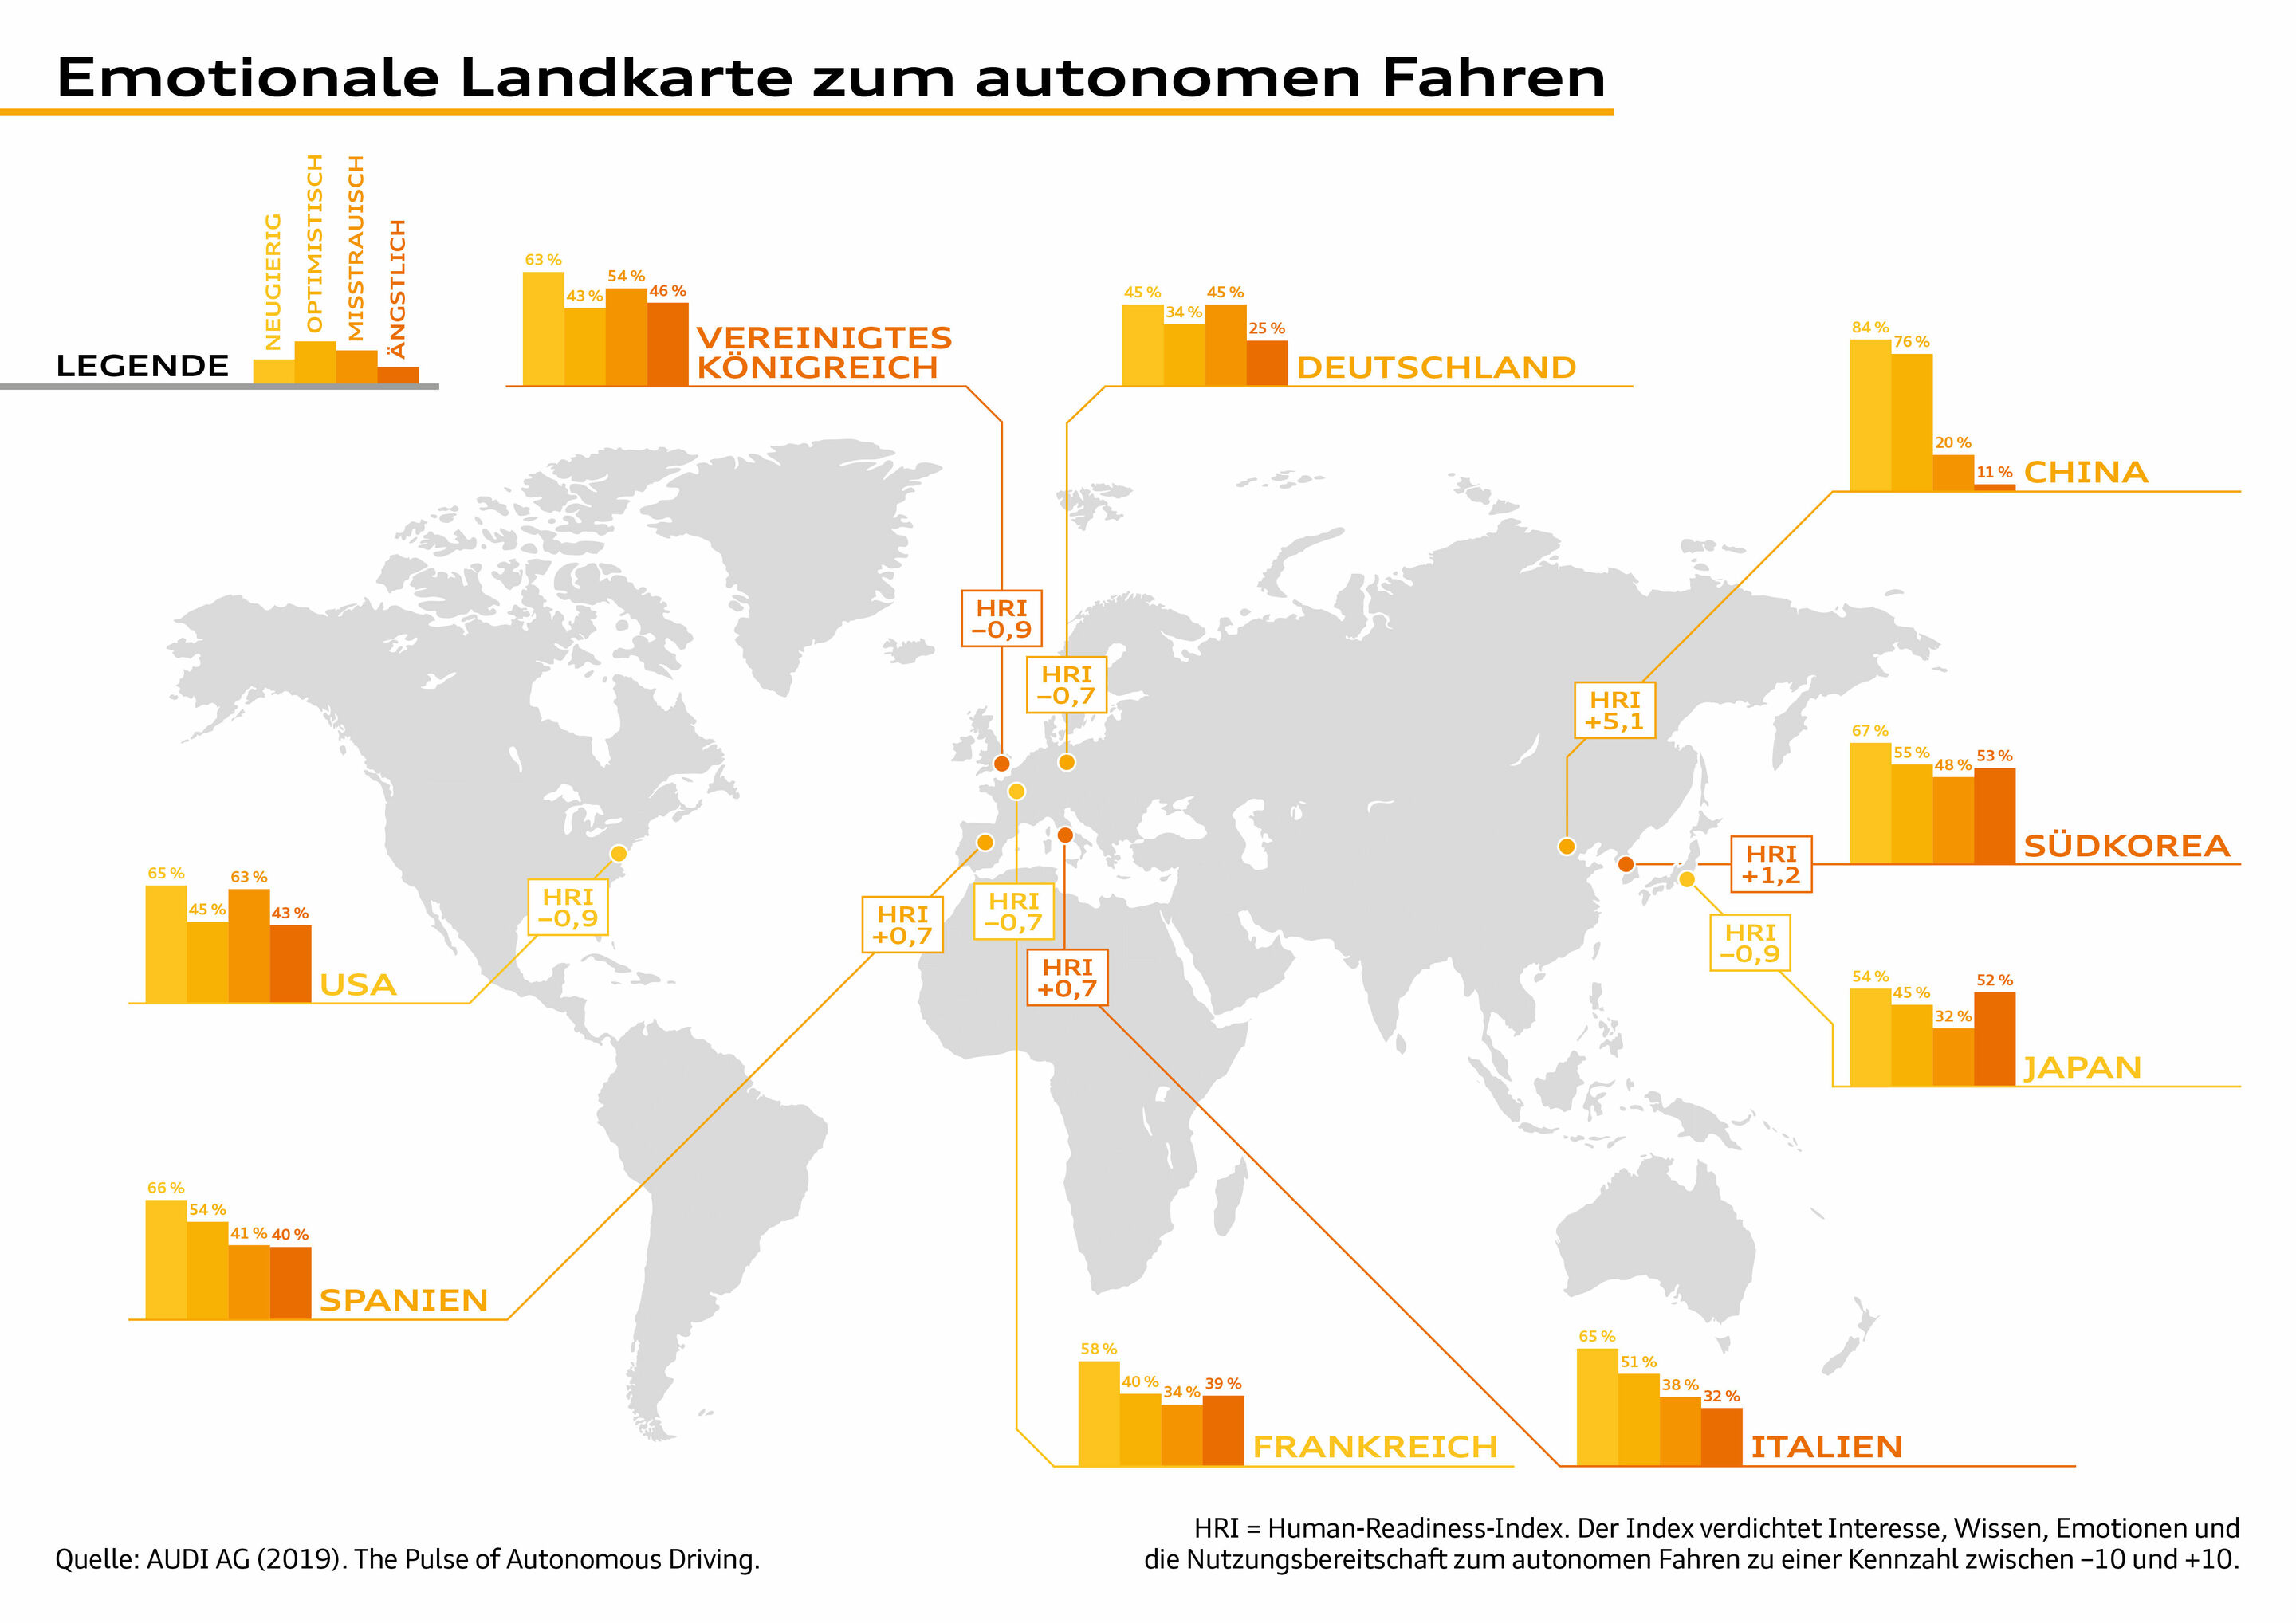 Audi veröffentlicht Nutzertypologie und emotionale Landkarte zum autonomen Fahren